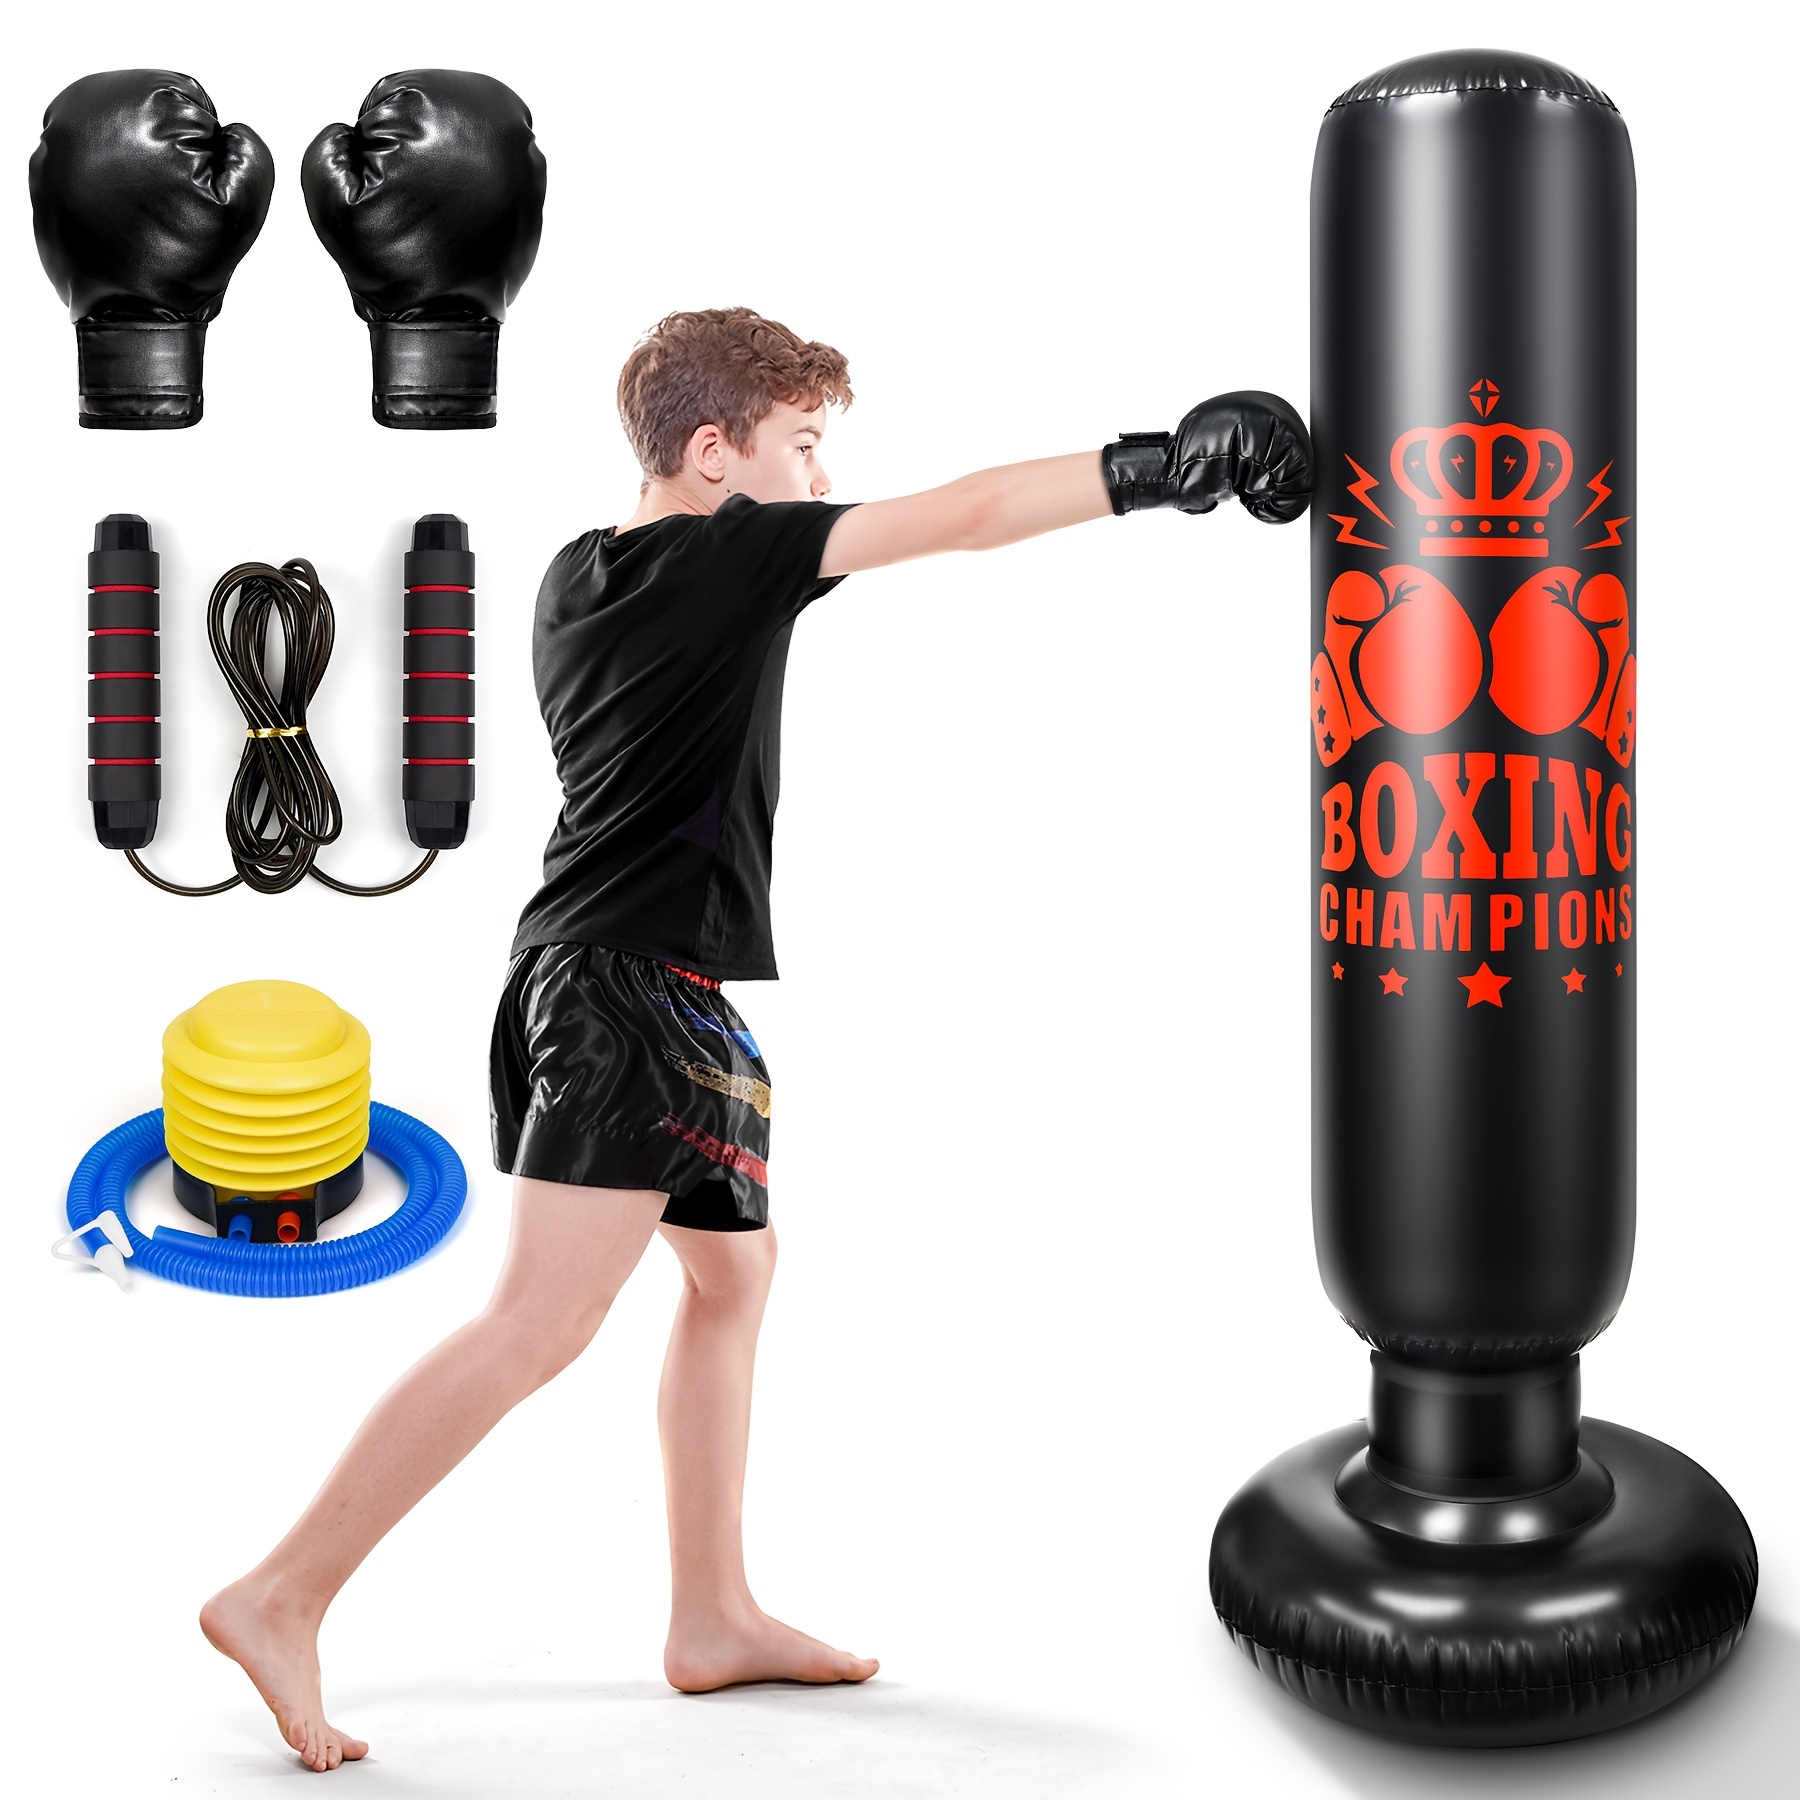  Juego de saco de boxeo para niños, incluye pelota de boxeo con  soporte, guantes de entrenamiento de boxeo, bomba de mano y soporte de  altura ajustable, juego de pelota de boxeo